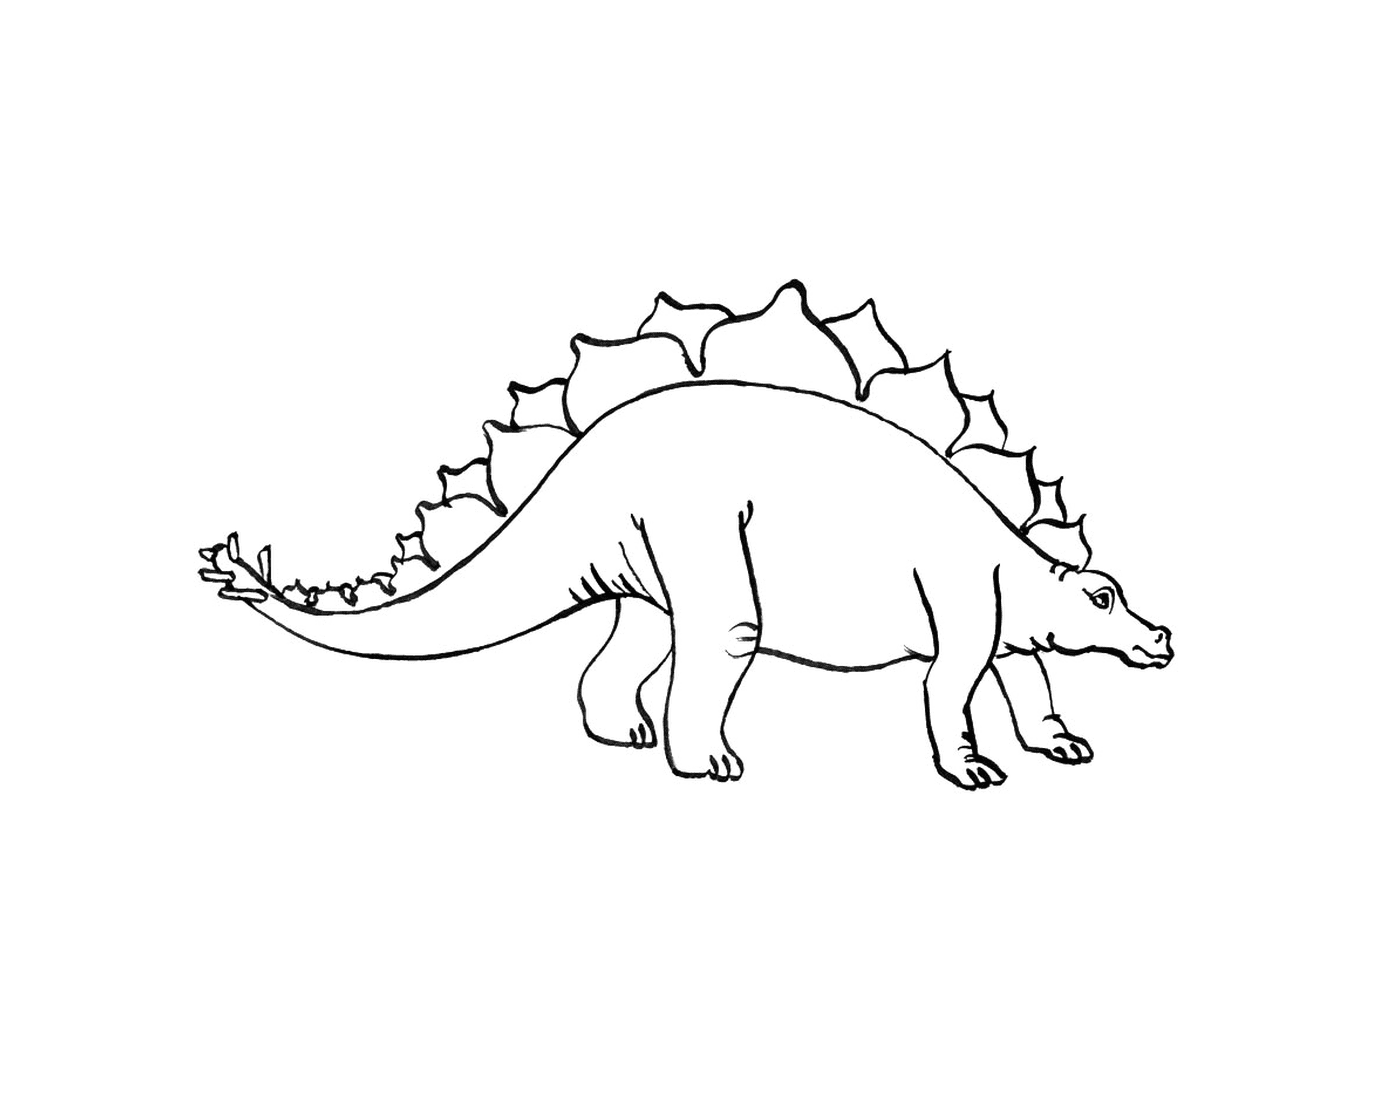  Estegossauro em pé em um desenho preto e branco 